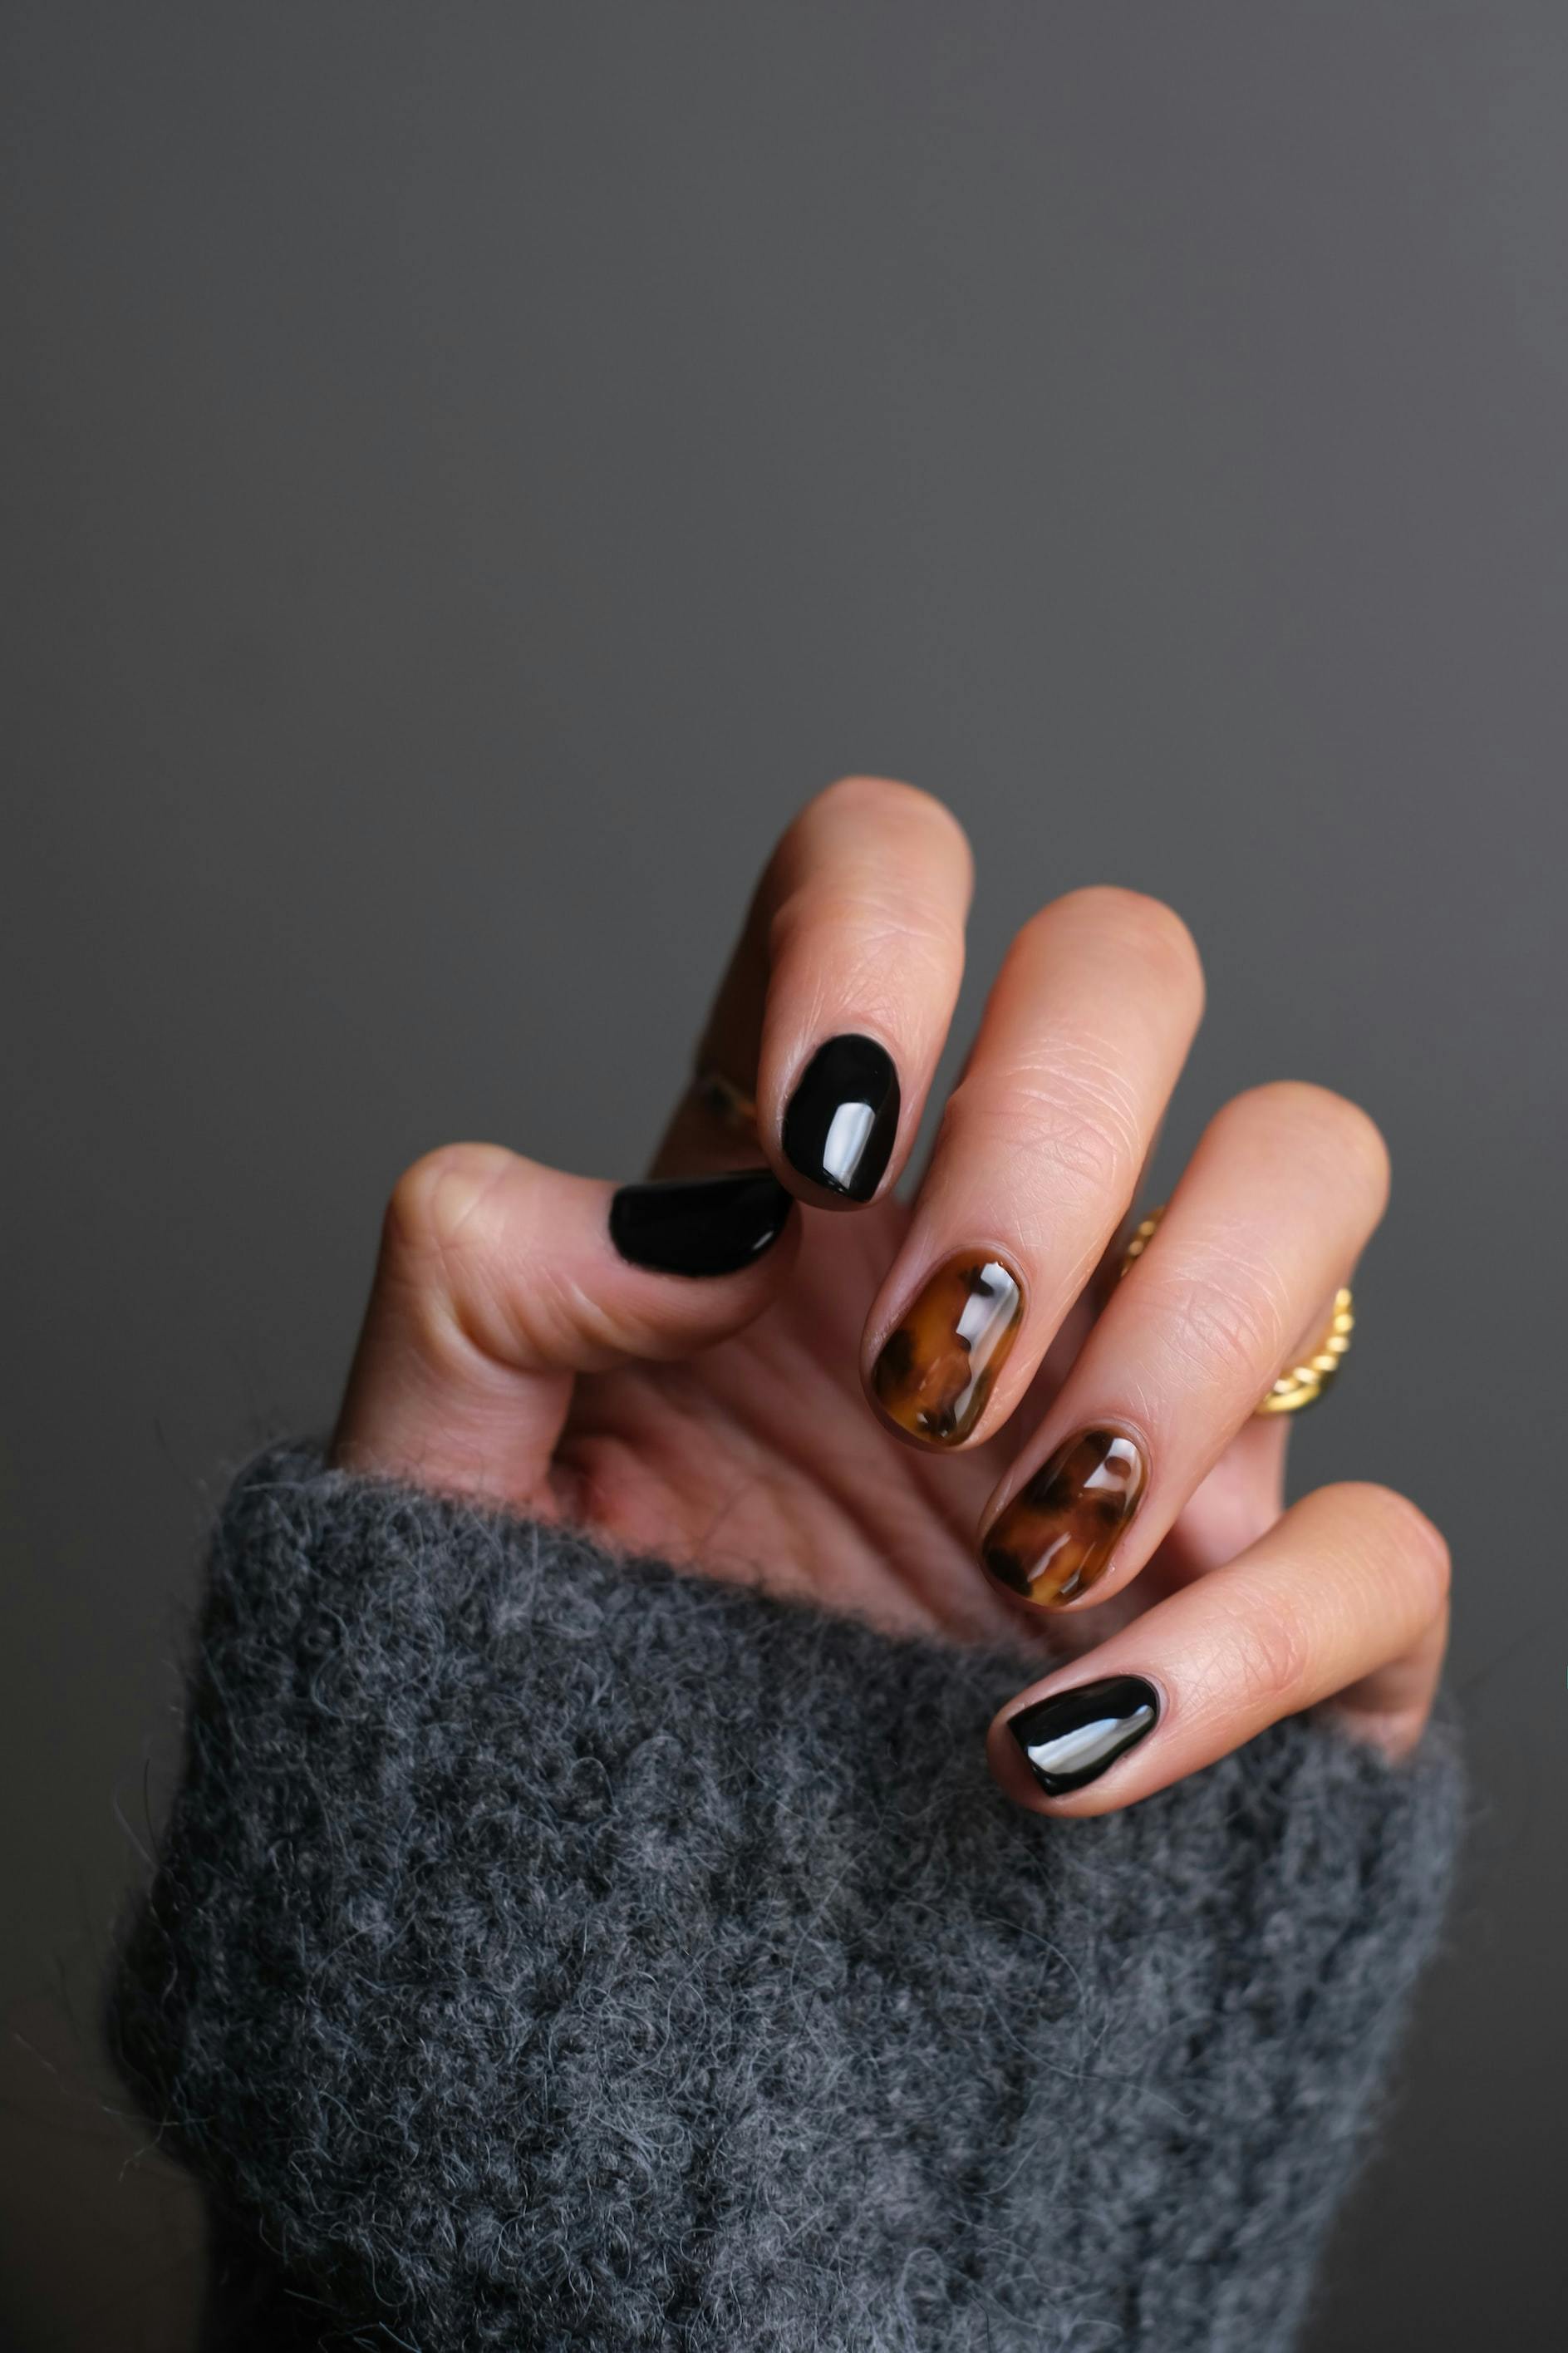 Pamp blog | Hvordan får man smukke negle?